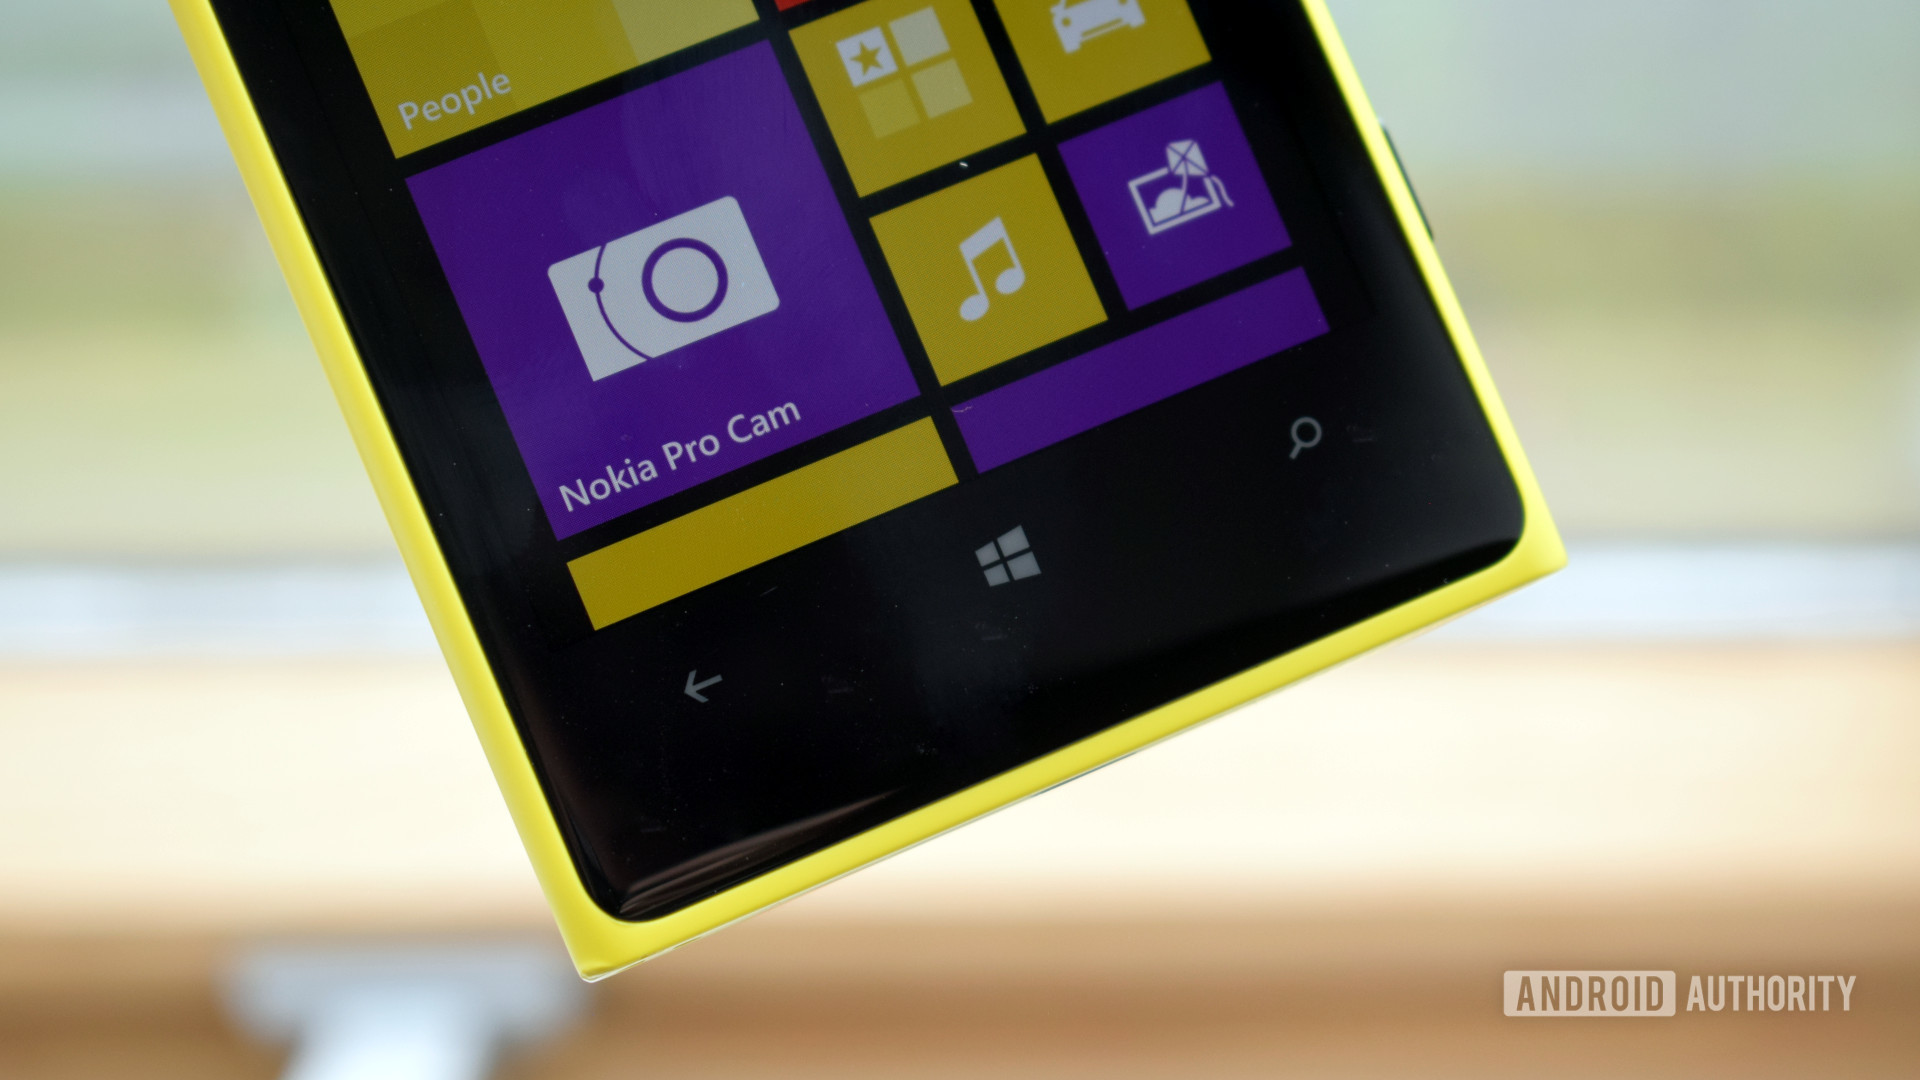 Bouton Windows Nokia Lumia 1020 Pureview